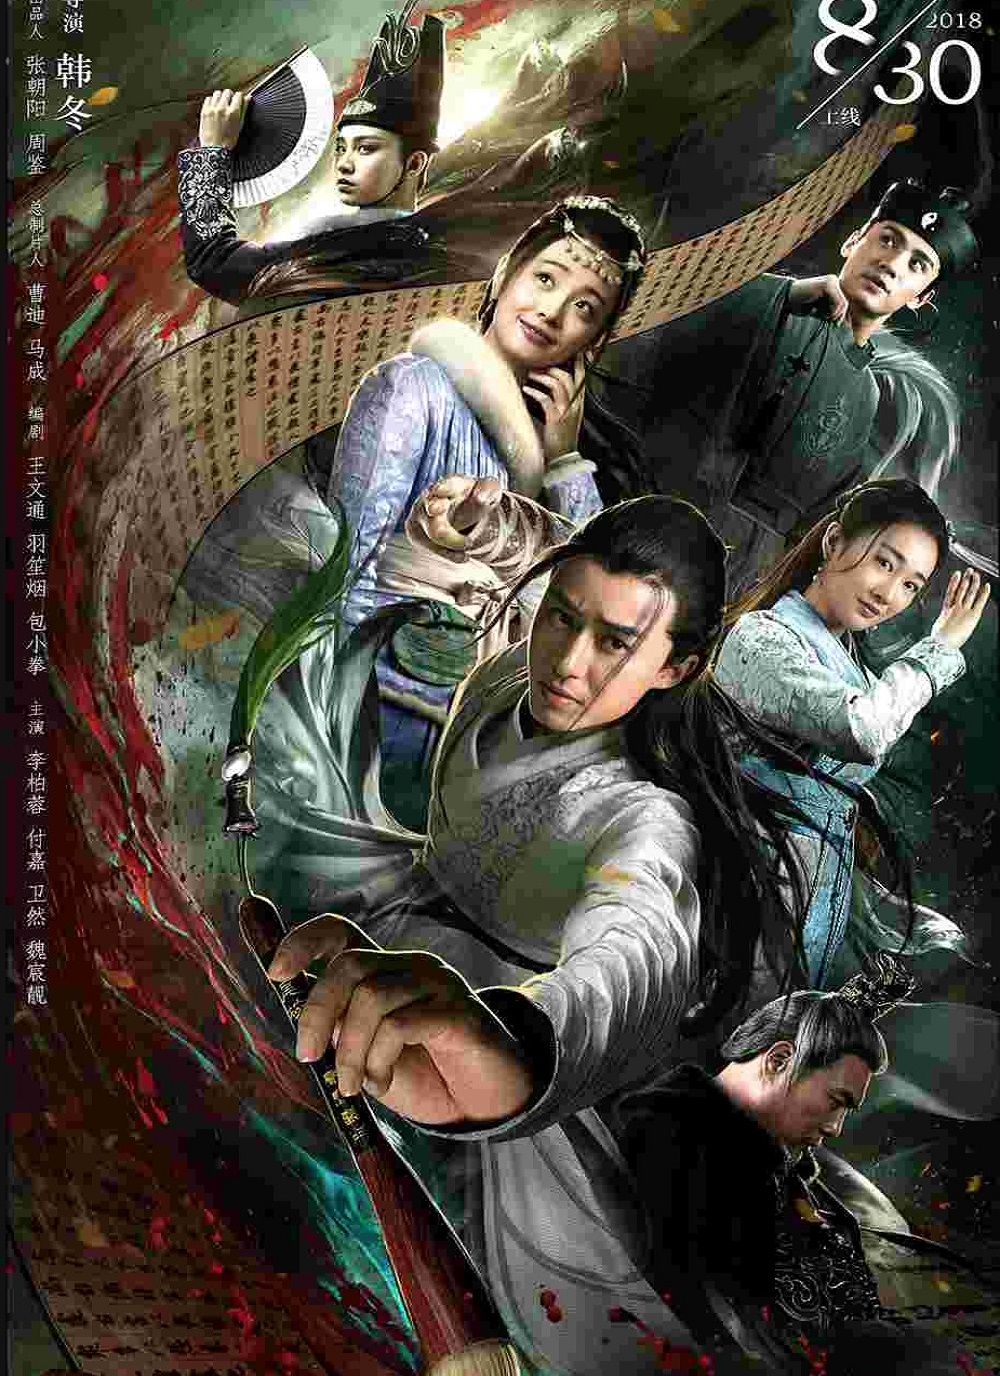 Banner Phim Đường Thi Tam Bách Án (The Untold Stories Of Tang Dynasty)